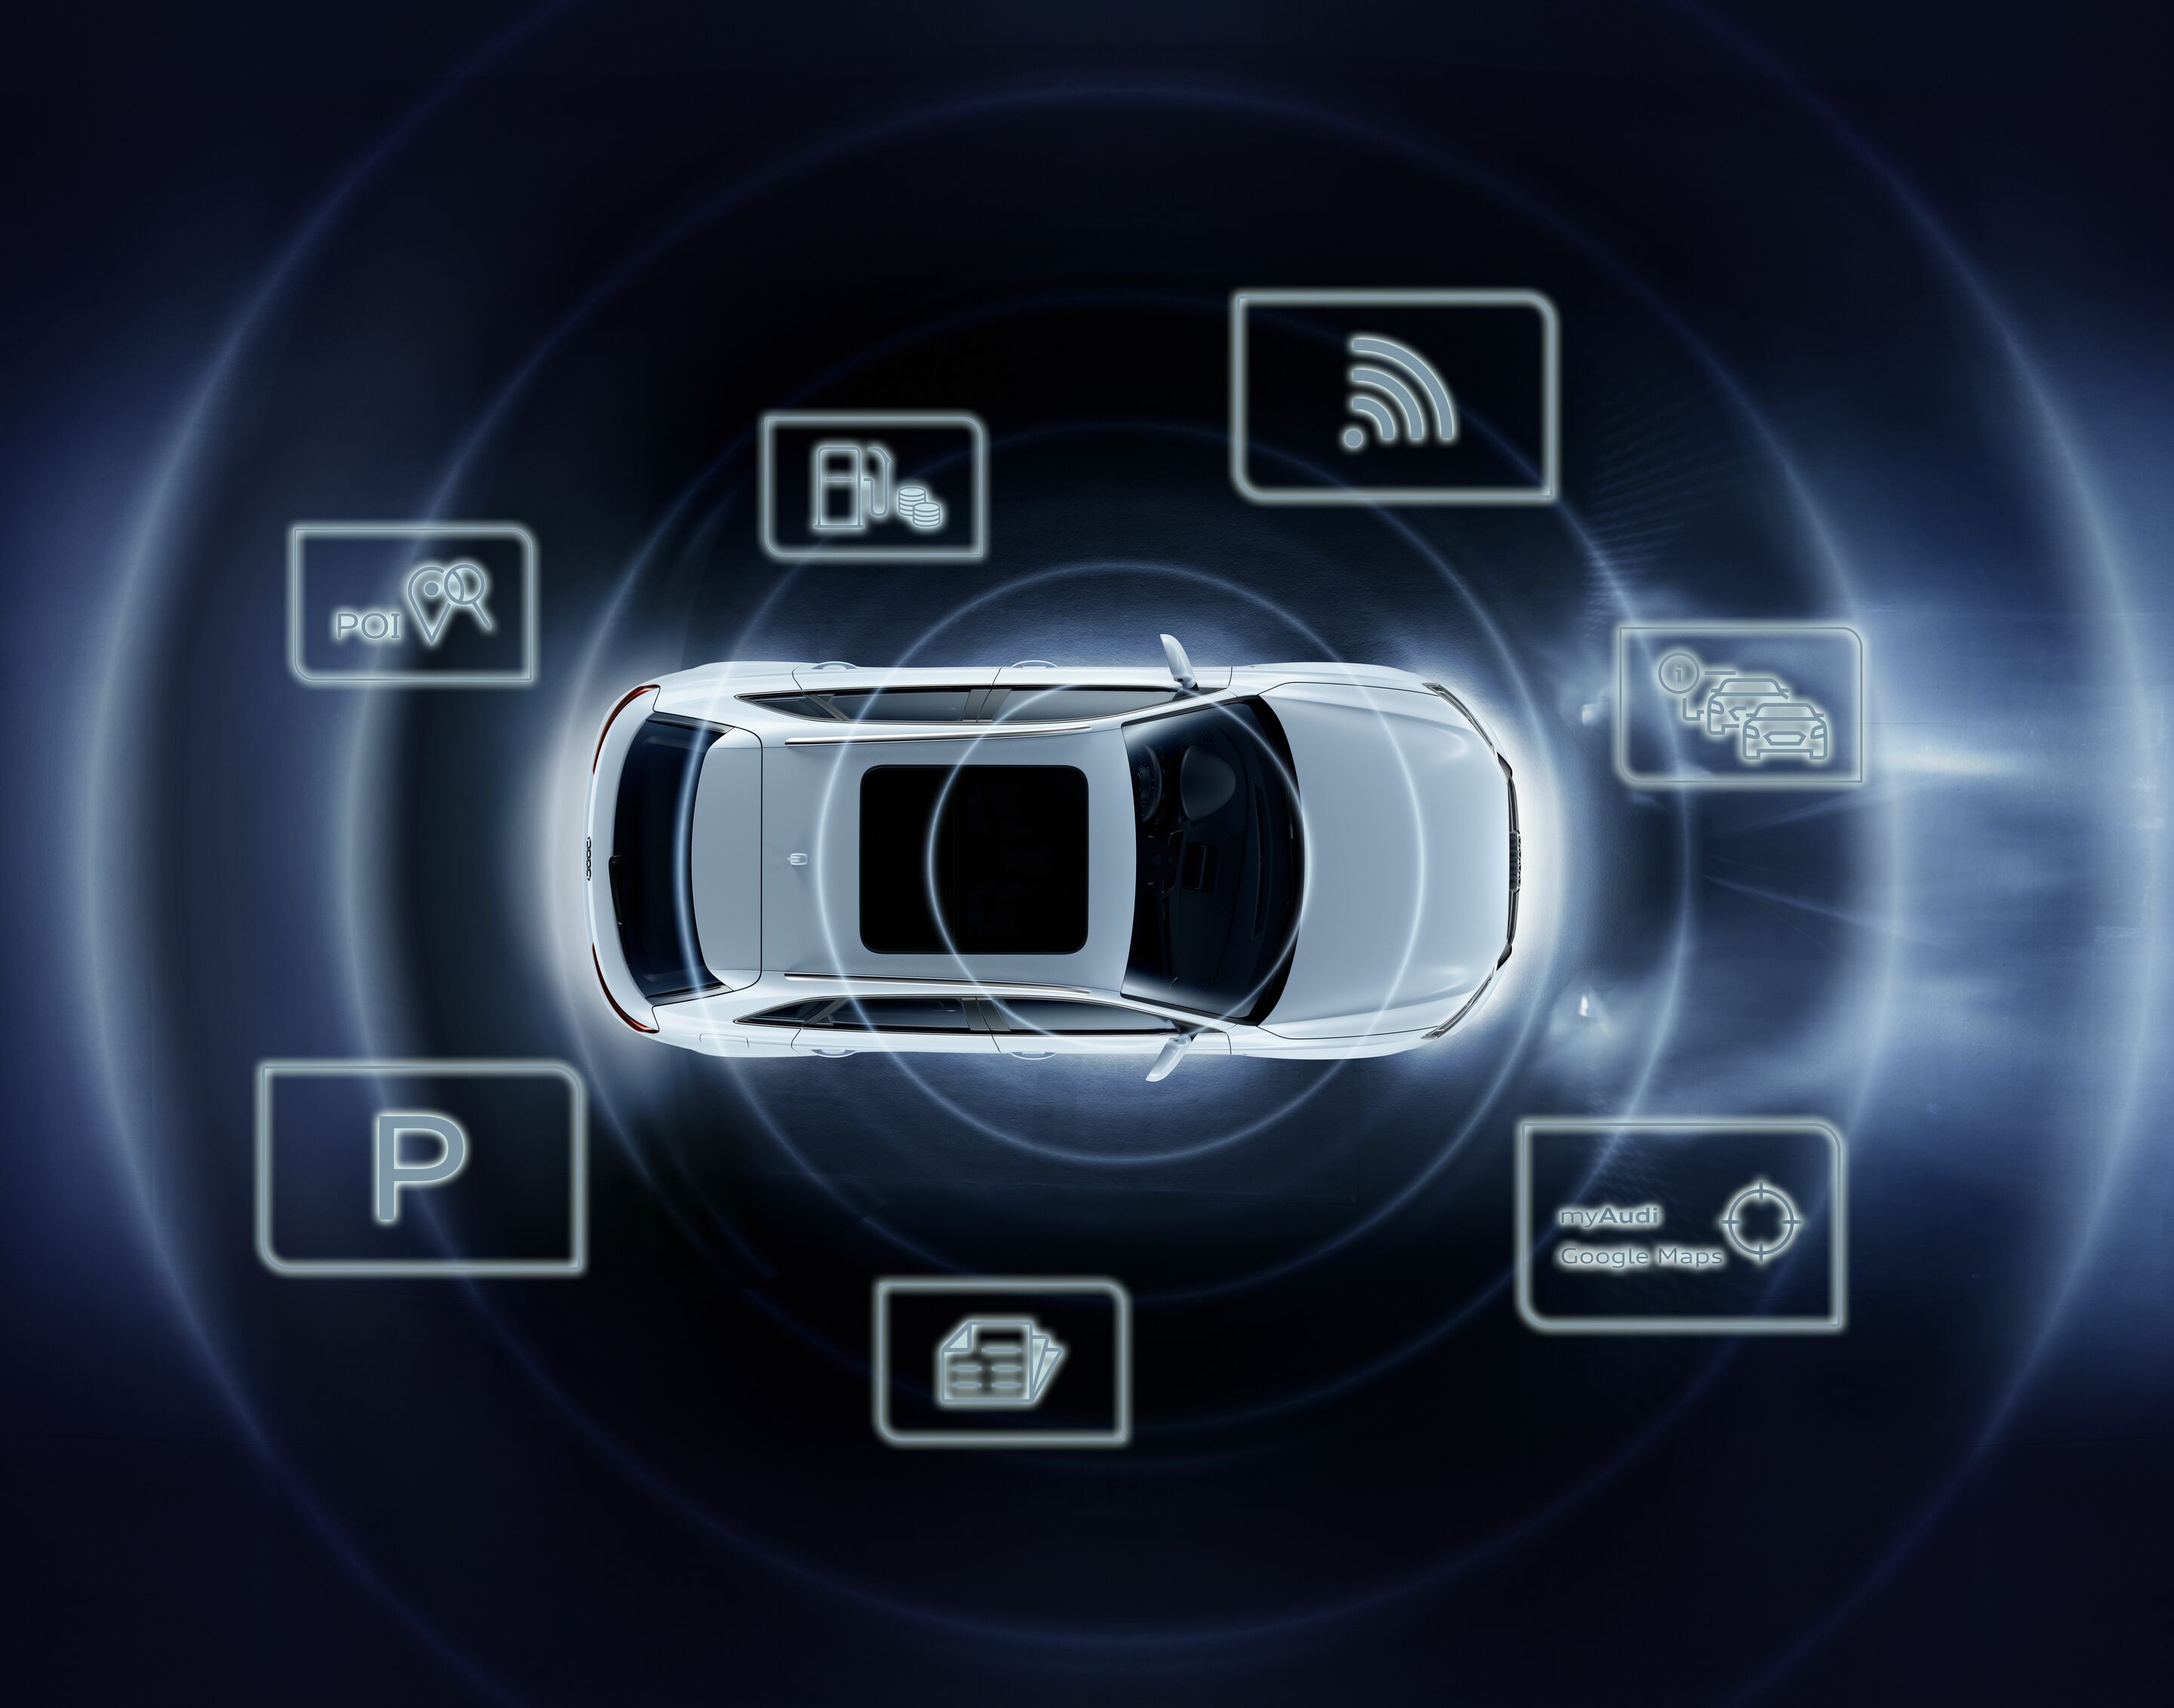 Auto-Apps: Mercedes me/Audi MMI connect/VW Car-Net/BMW connected